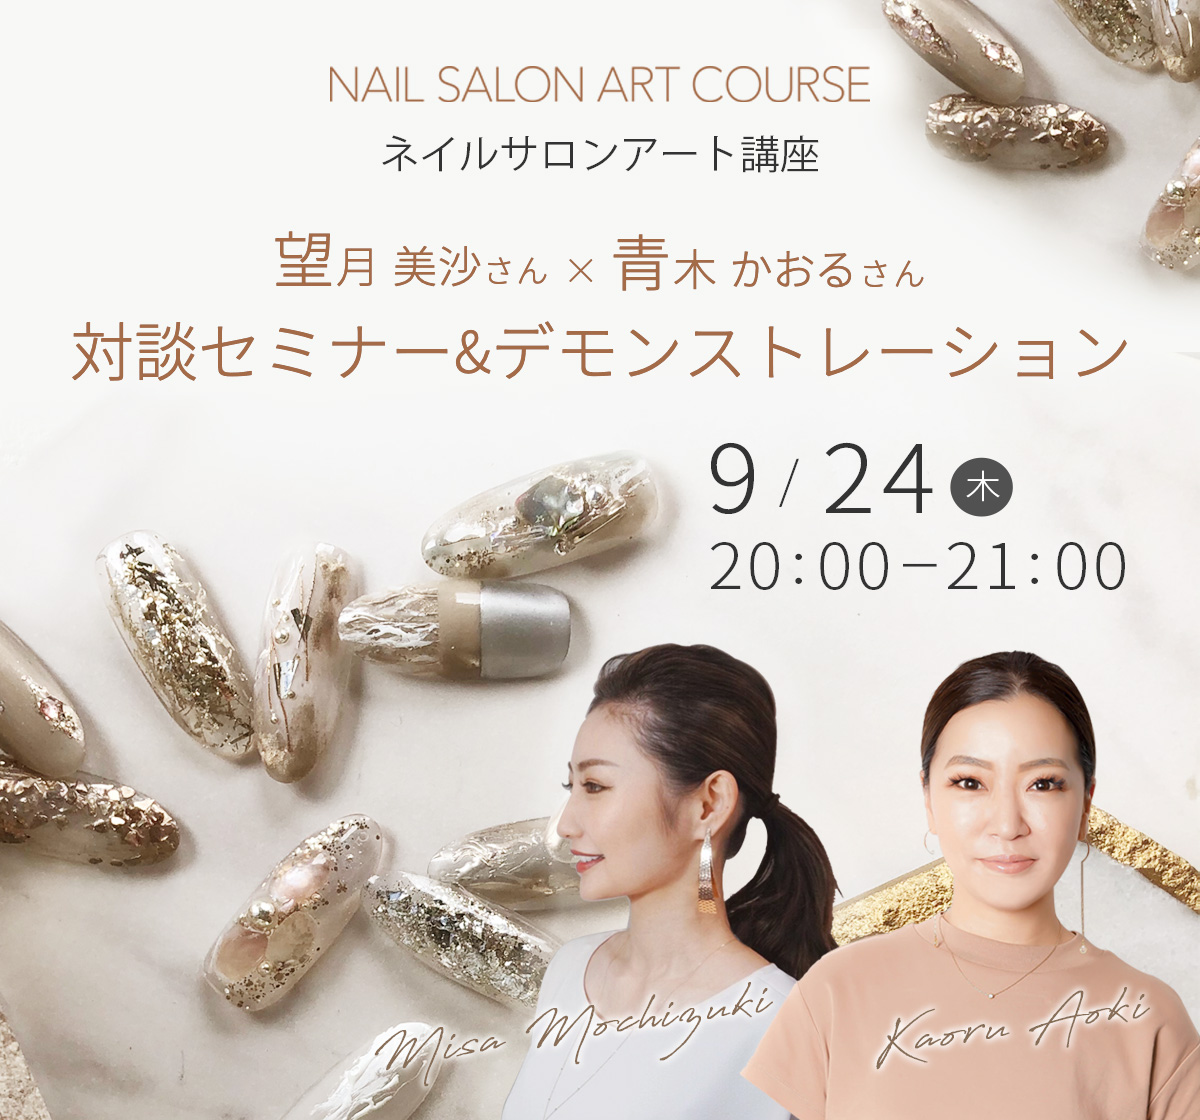 9/24開催 ネイルサロンアート講座 望月美沙さん×青木かおるさん対談セミナー&デモンストレーション